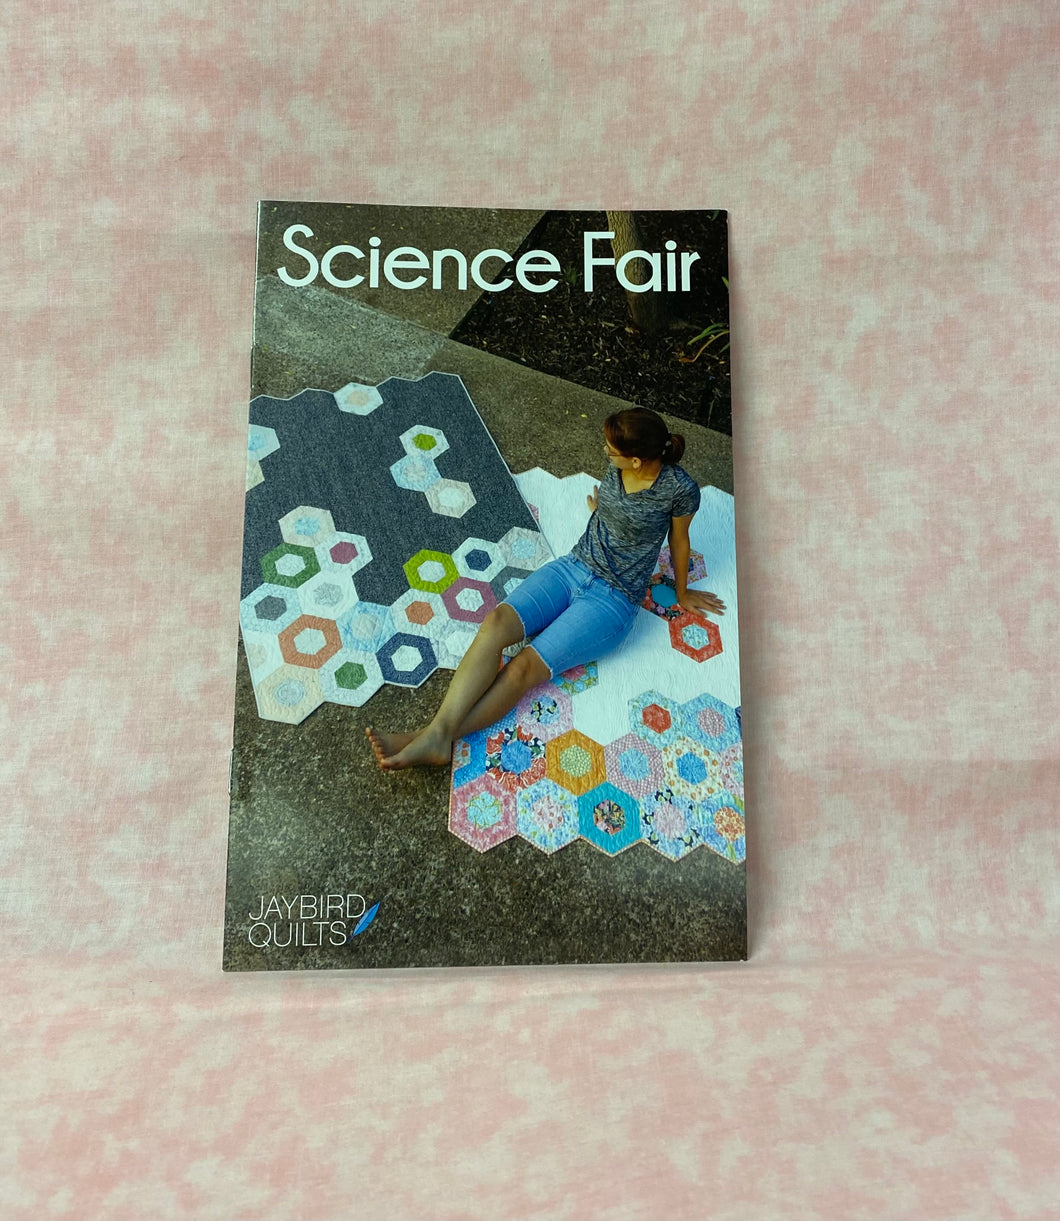 Jaybird Quilts Science Fair p27